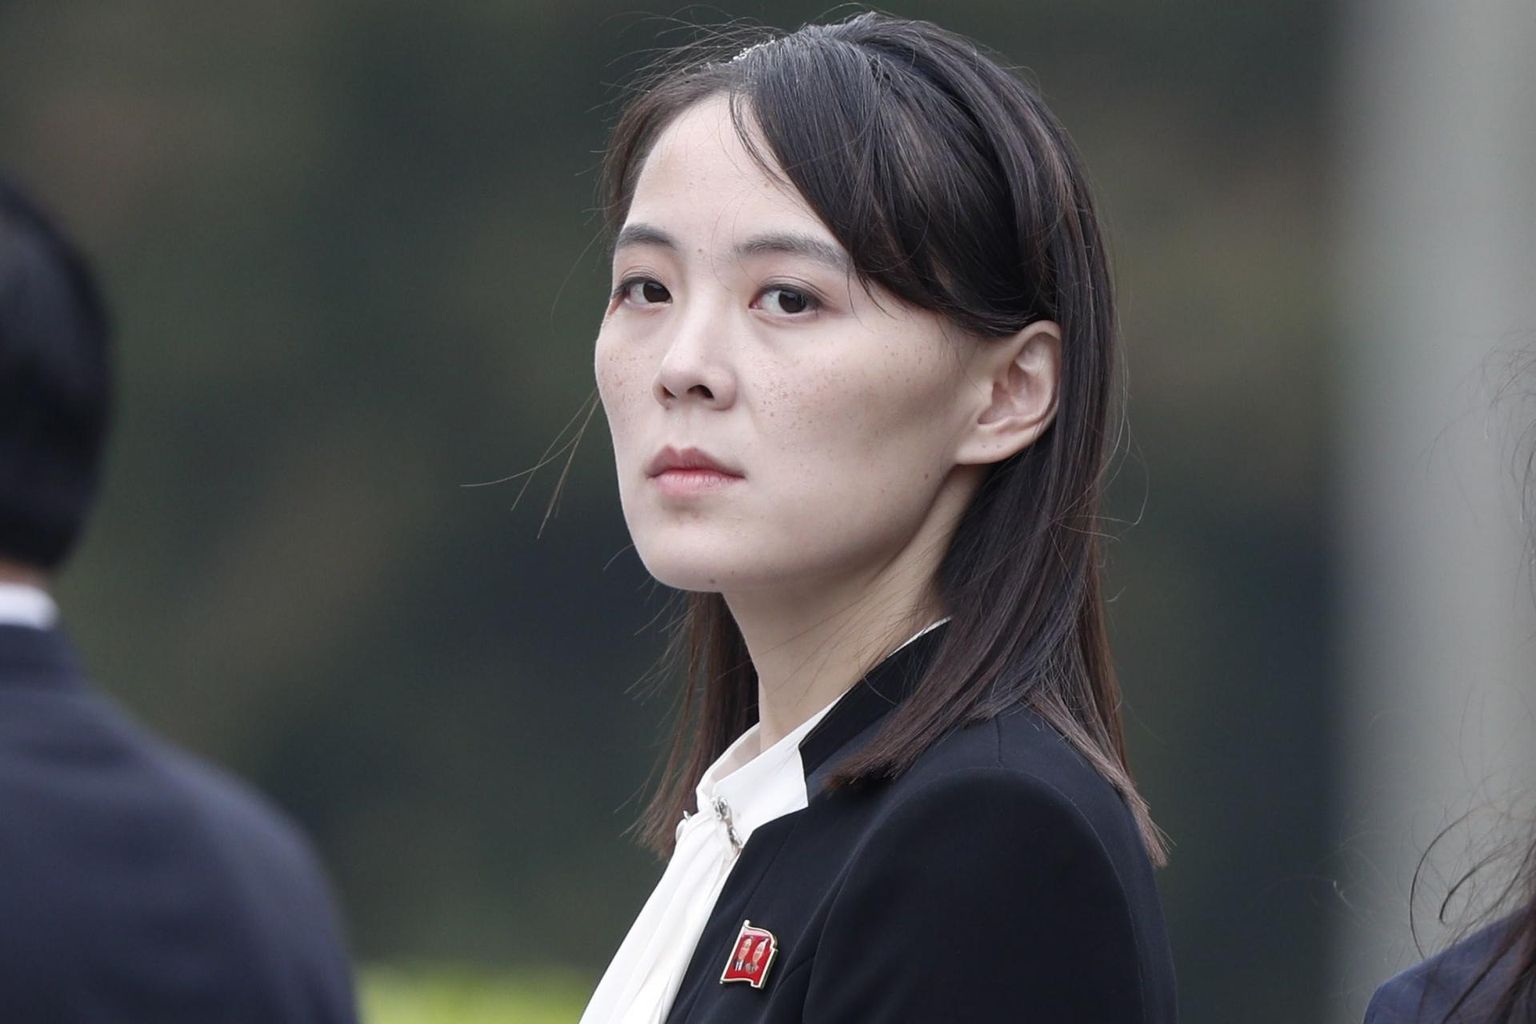 Põhja-Korea liidri Kim Jong-un õde Kim Yo-jong on väidetavalt saanud riigijuhtimisel ülesandeid juurde.